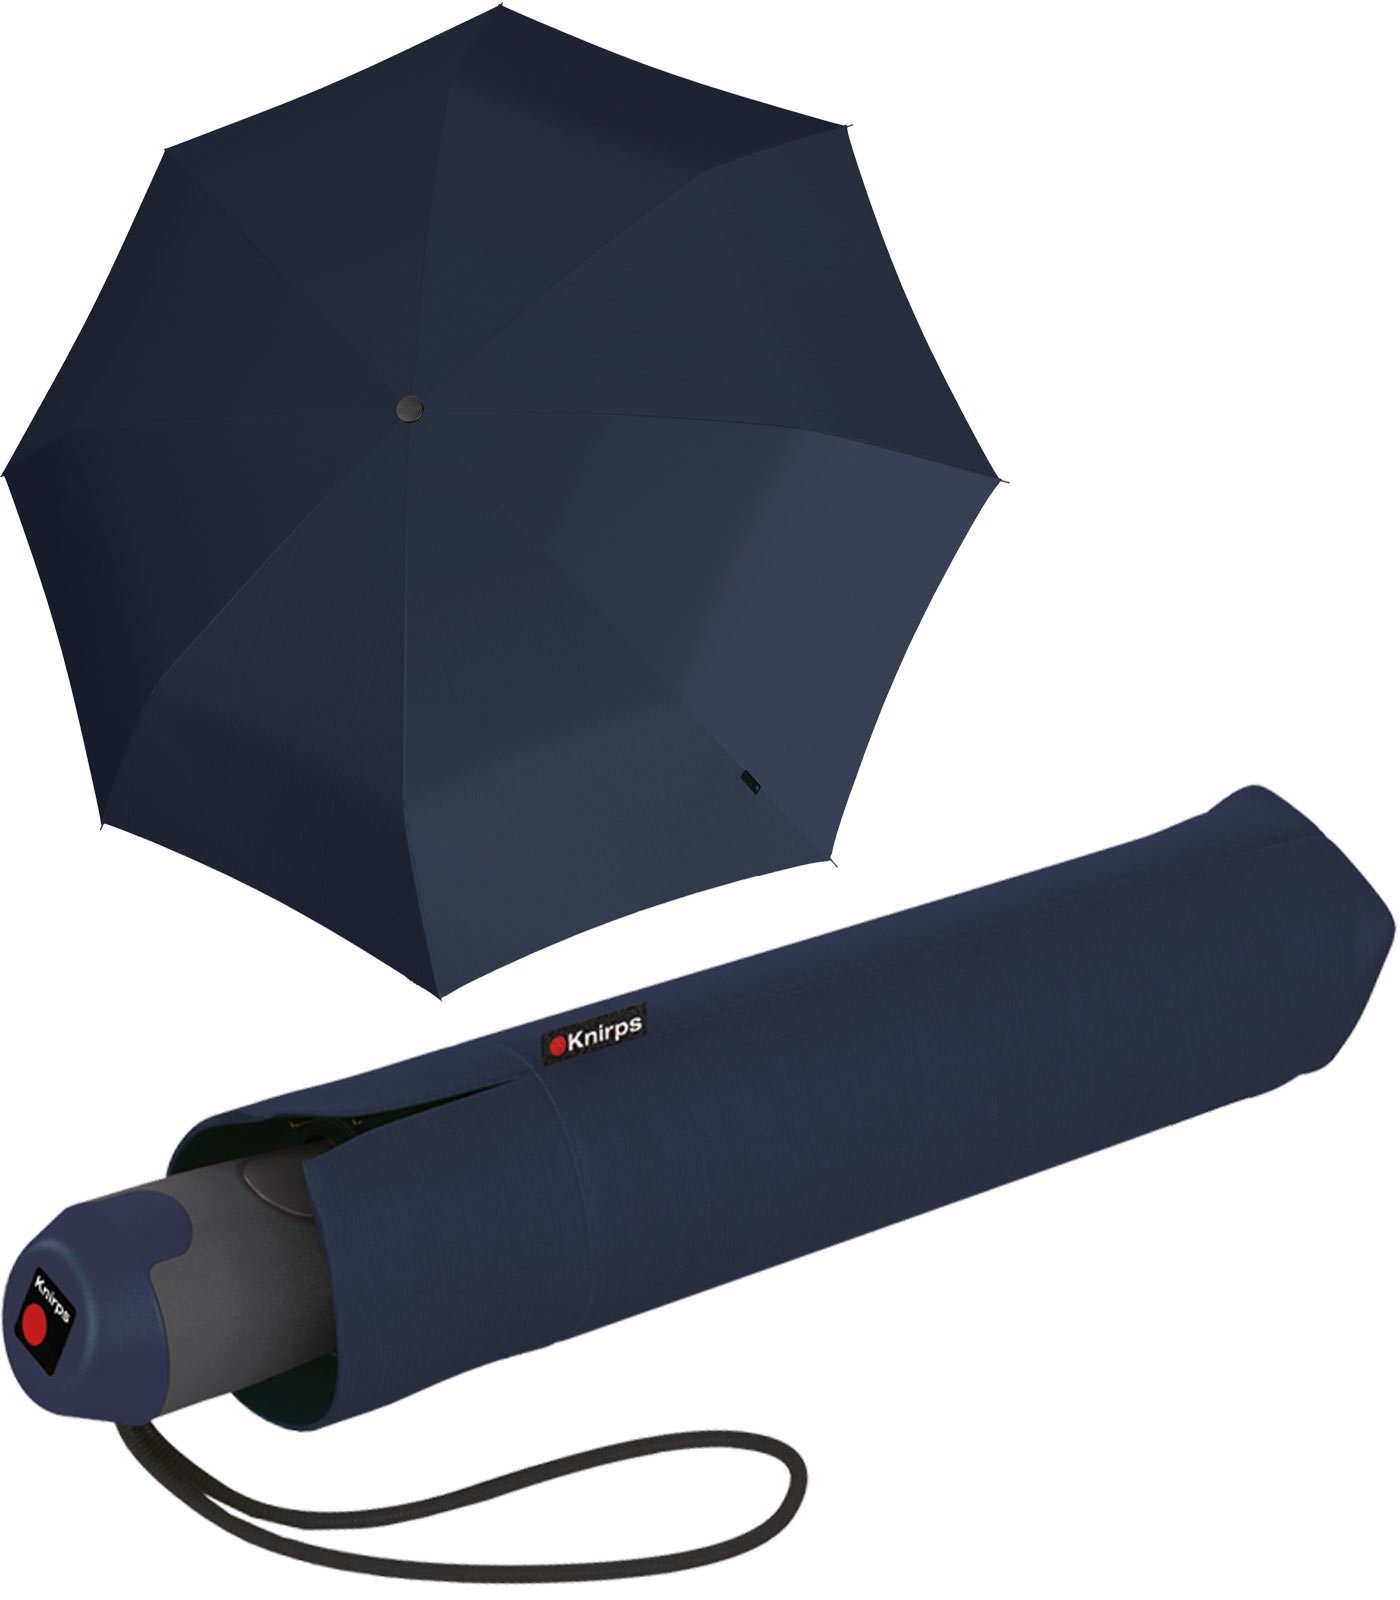 Knirps® Taschenregenschirm E.200 Duomatic Schirm mit Auf-Zu-Automatik, stabil und elegant navy blau